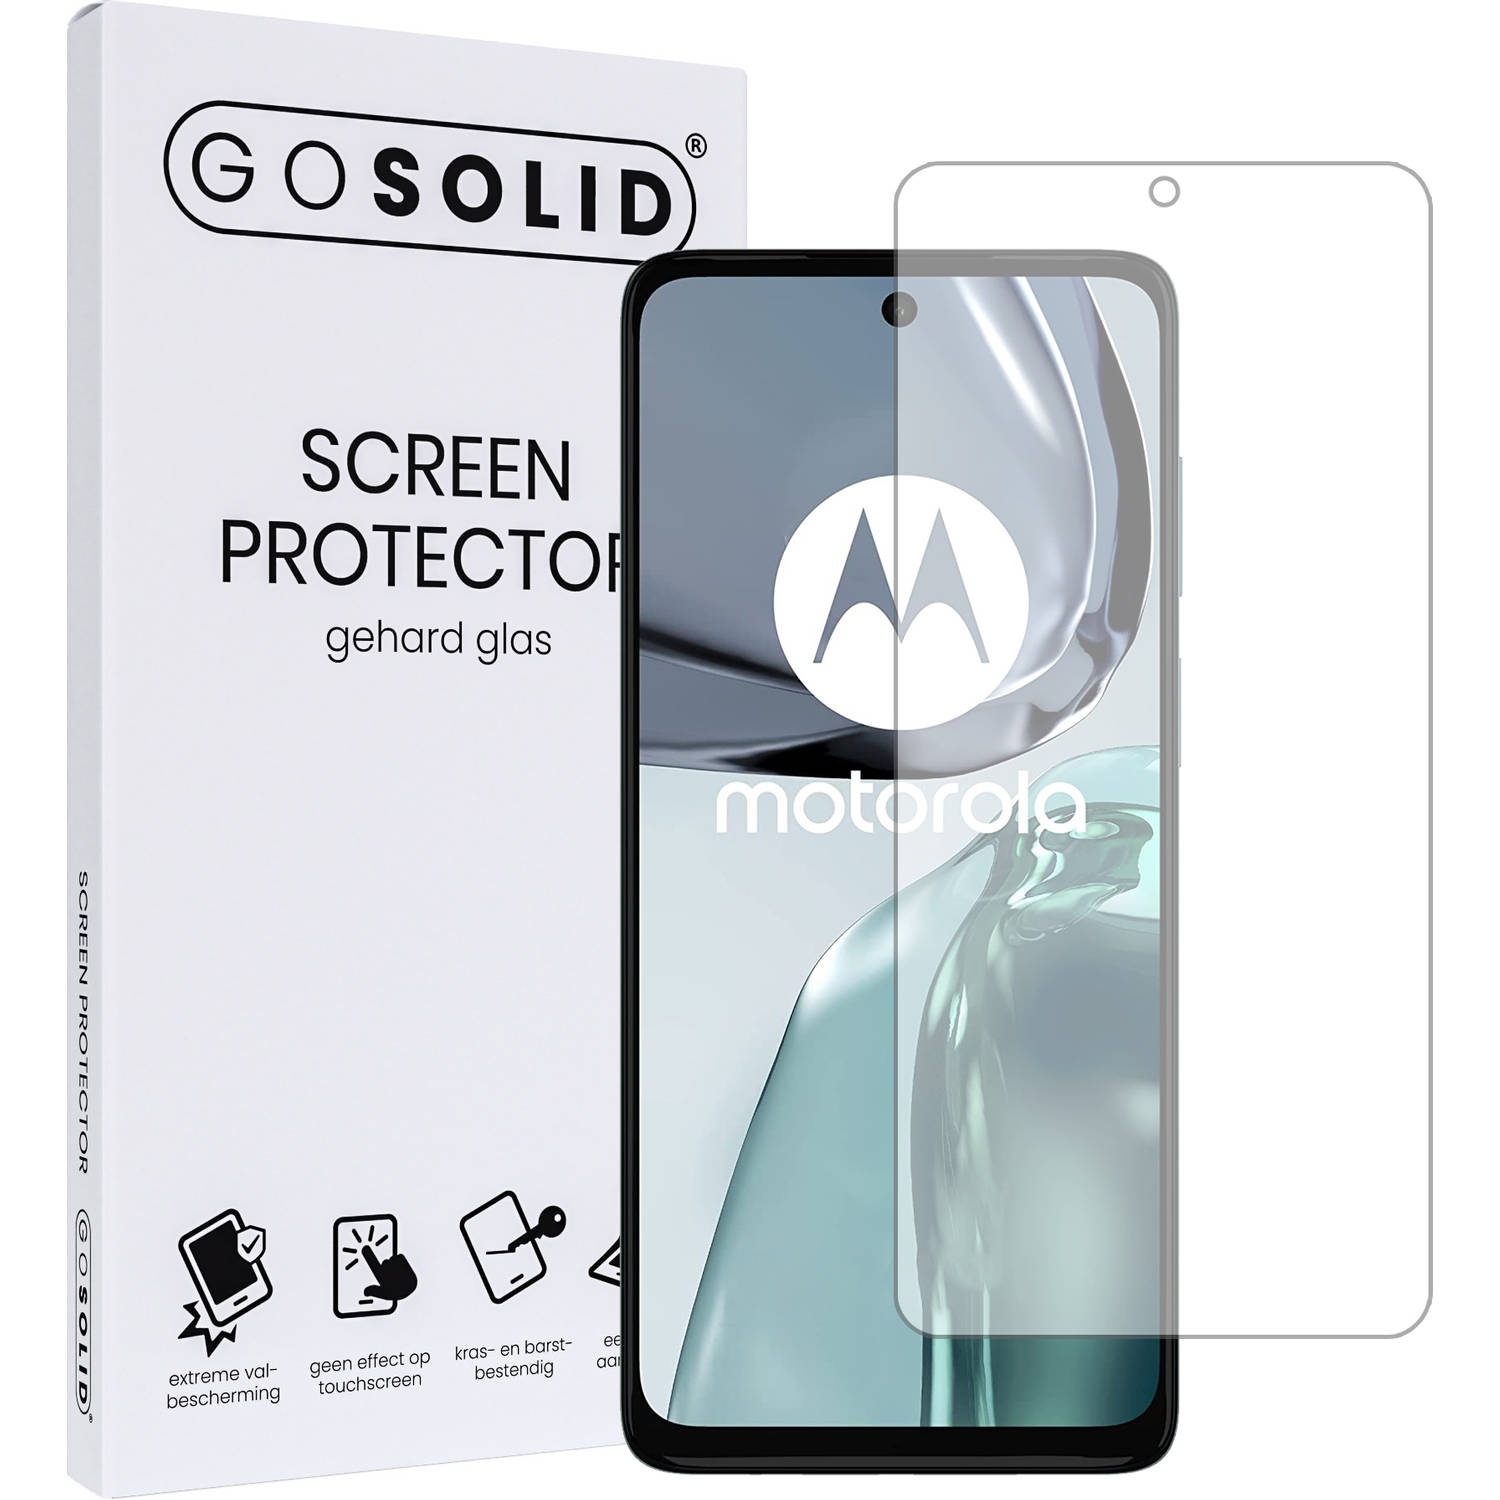 GO SOLID! Screenprotector geschikt voor Motorola moto G23 gehard glas